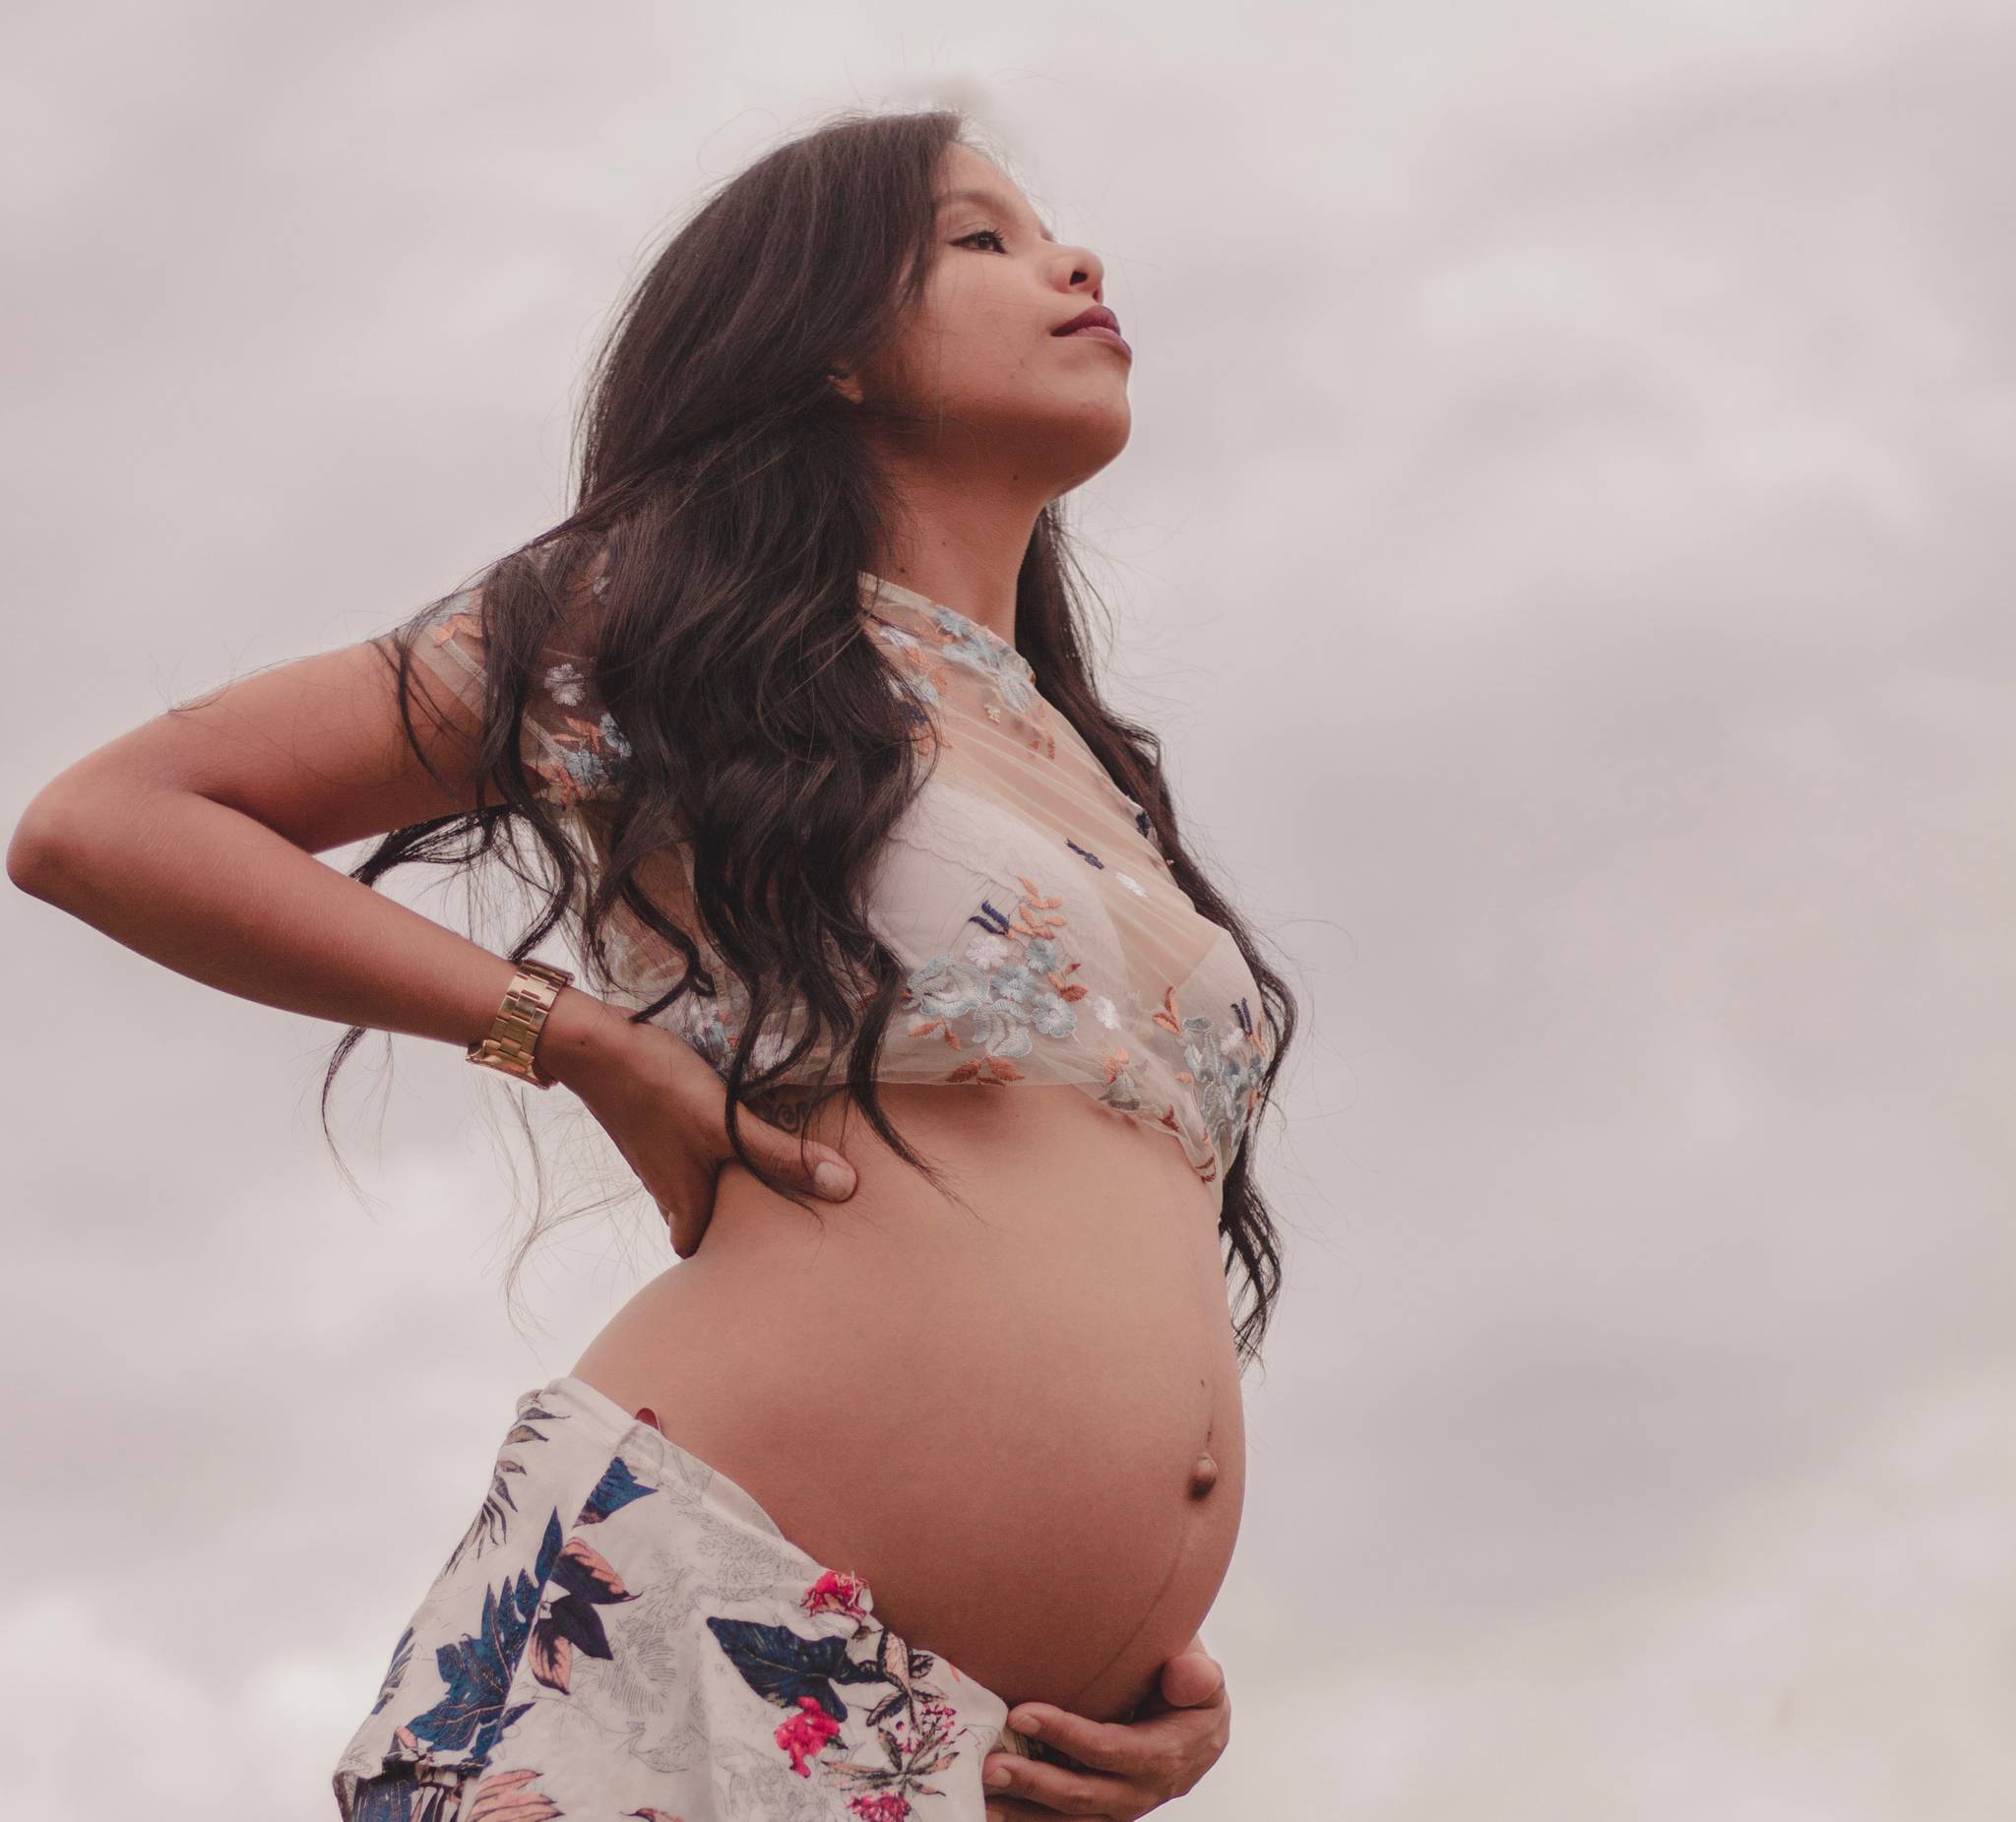 Pregnant women celebrate de-standardised maternity wear